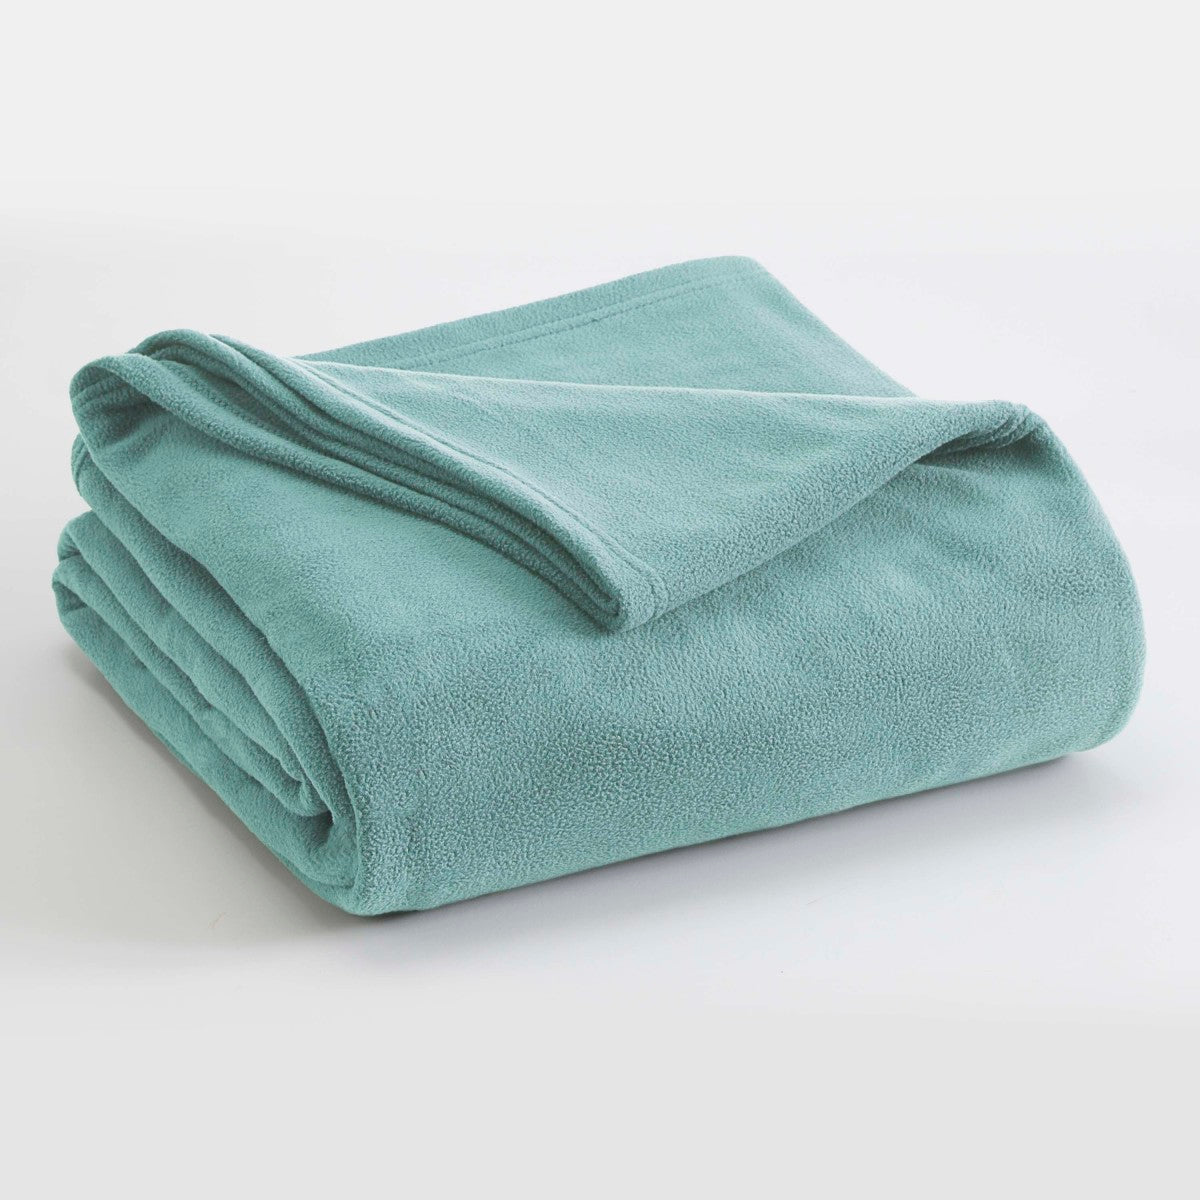 Vellux Fleece Blanket, Blue, Full/Queen